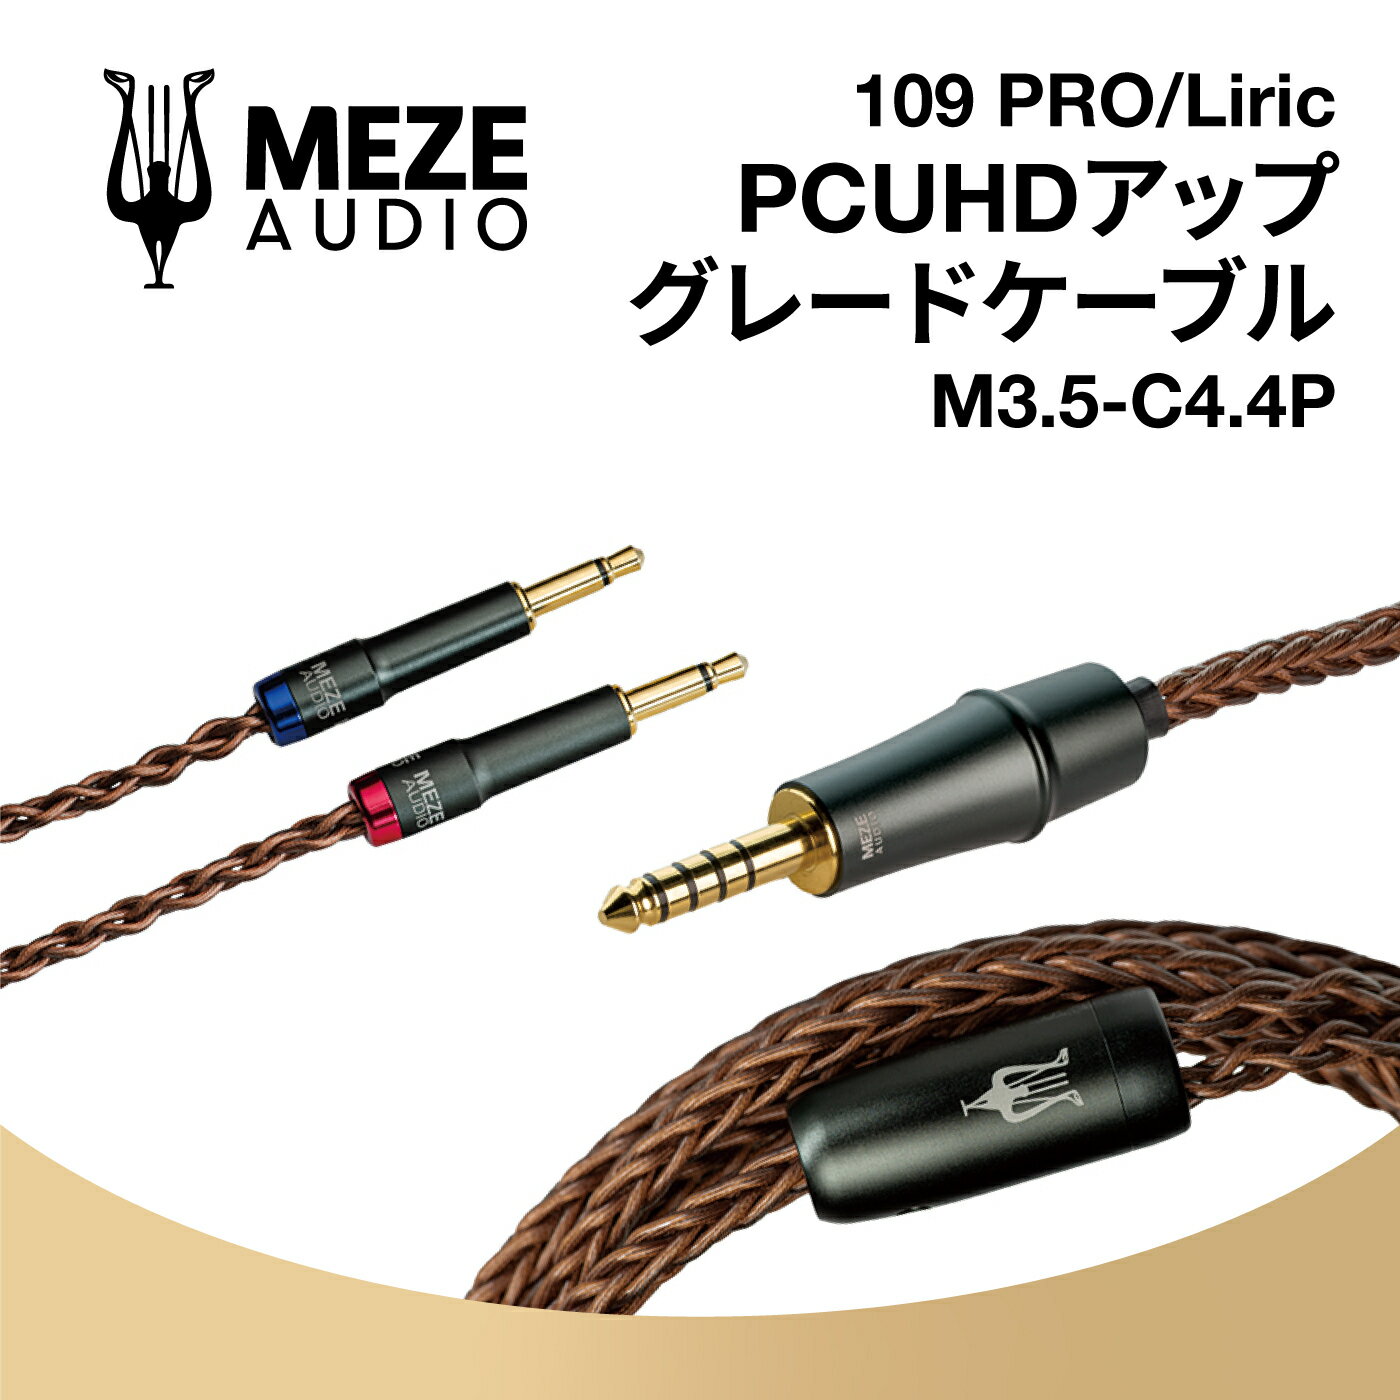 Meze Audio M3.5-C4.4P 3.5mm COPPER PCUHD PREMIUM CABLE 4.4mm ᥼ǥ (109 PRO / Liric б) Ź